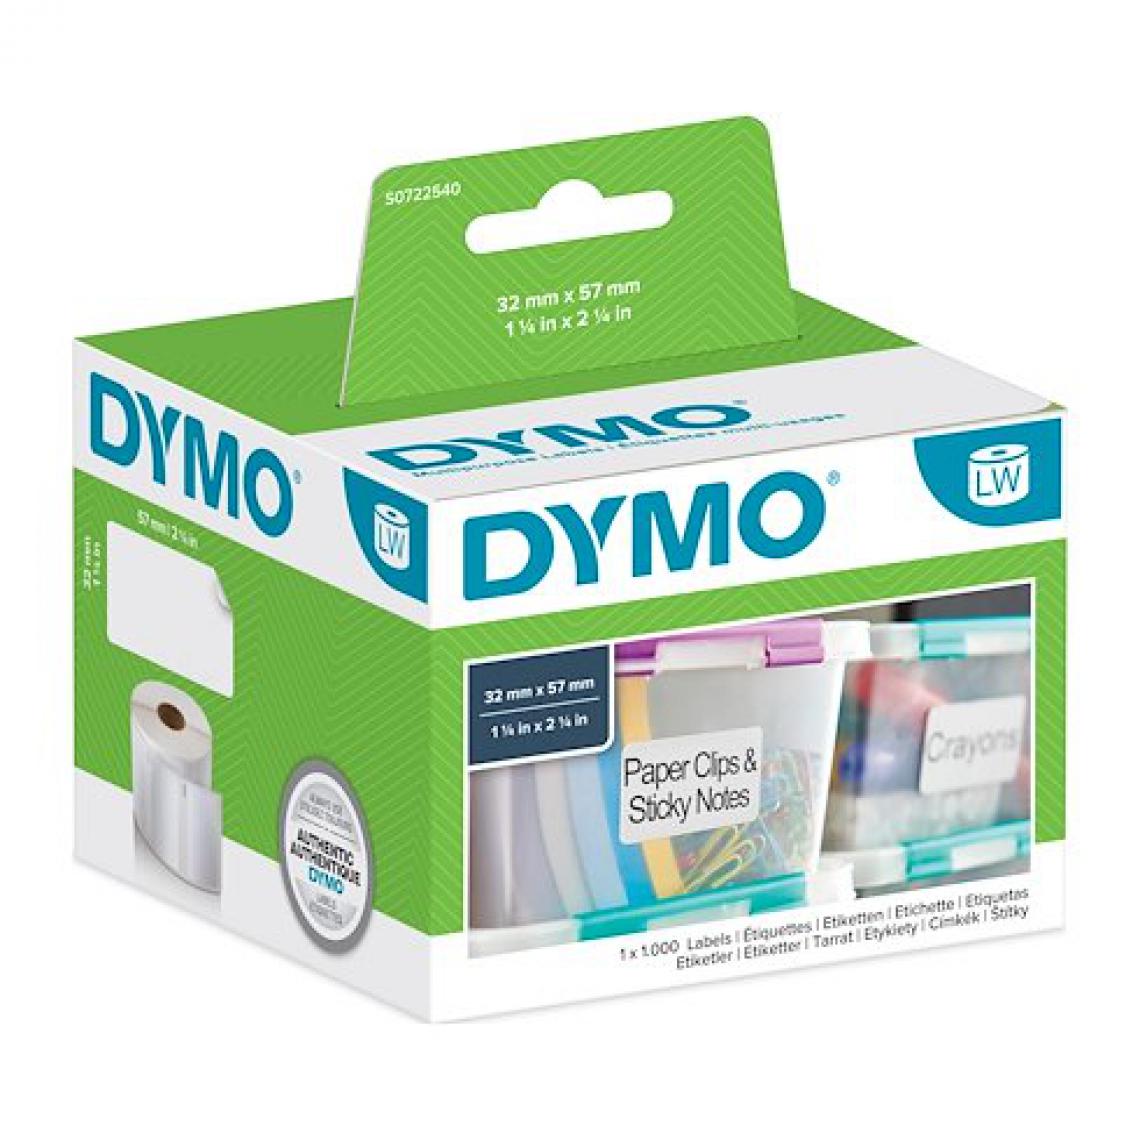 Dymo - Pack 12 rouleaux d'étiquettes 57 x 32 mm Dymo - Rouleaux de 1000 étiquettes - Accessoires Bureau